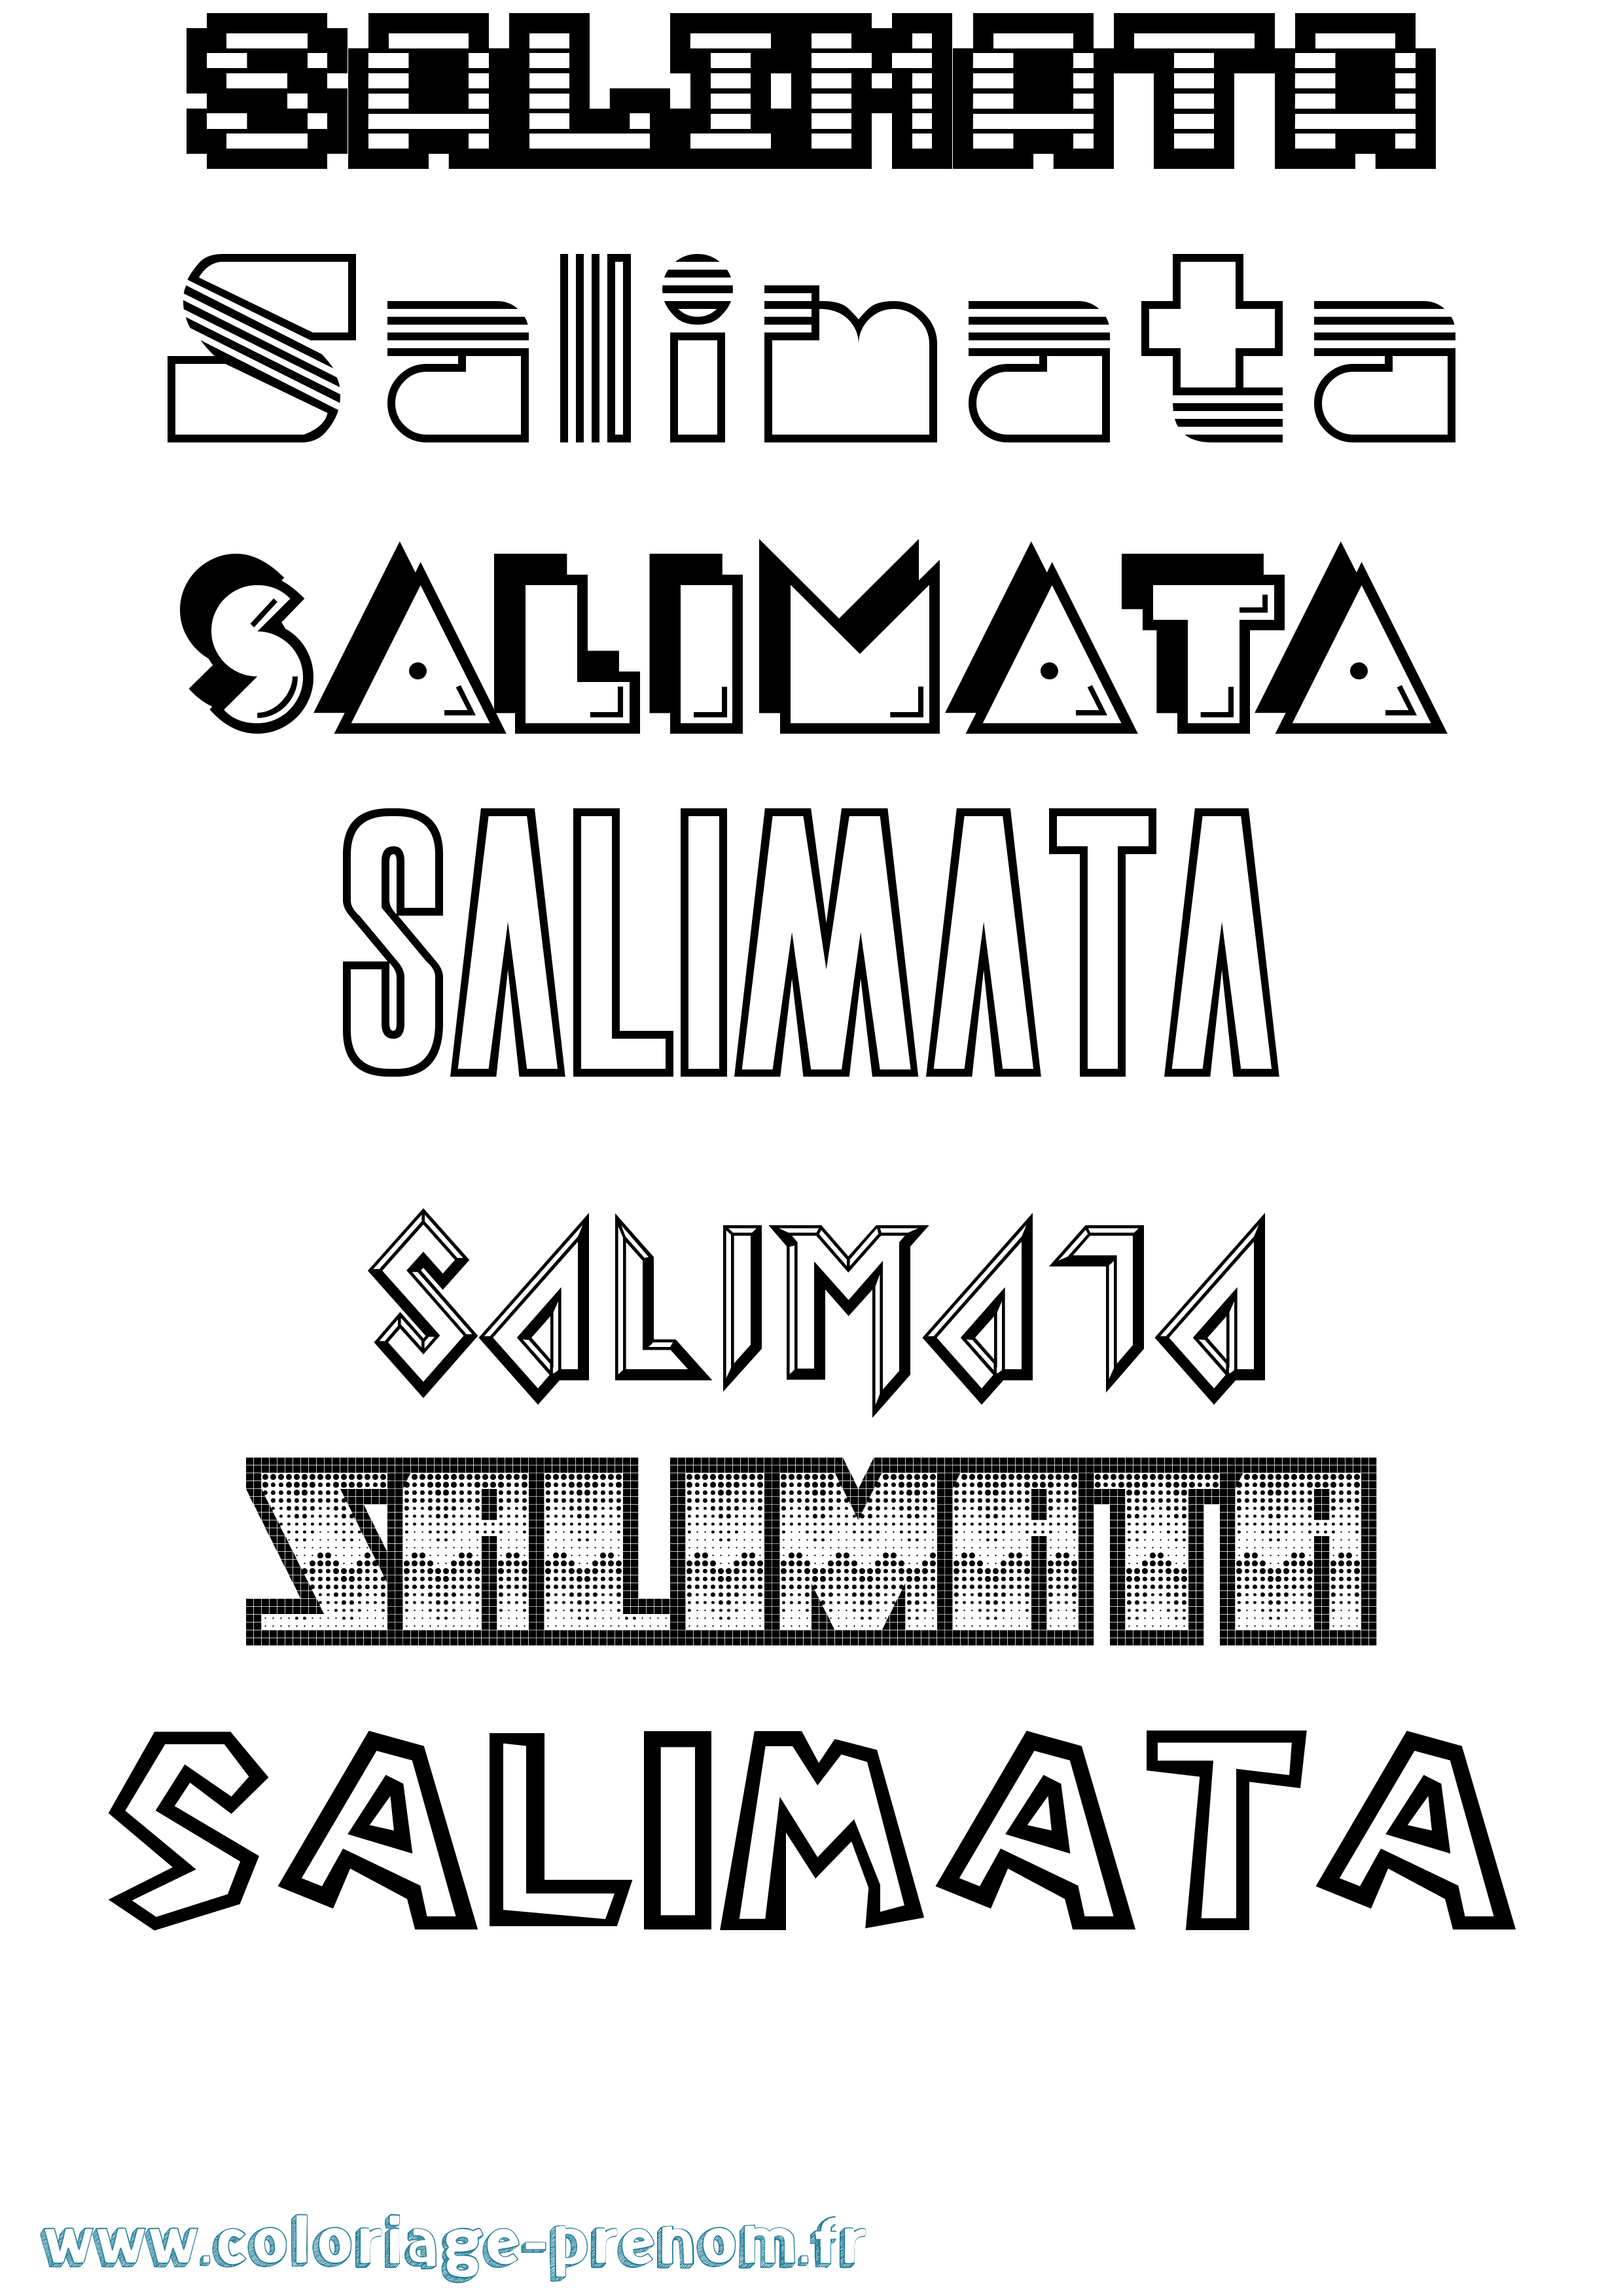 Coloriage prénom Salimata Jeux Vidéos